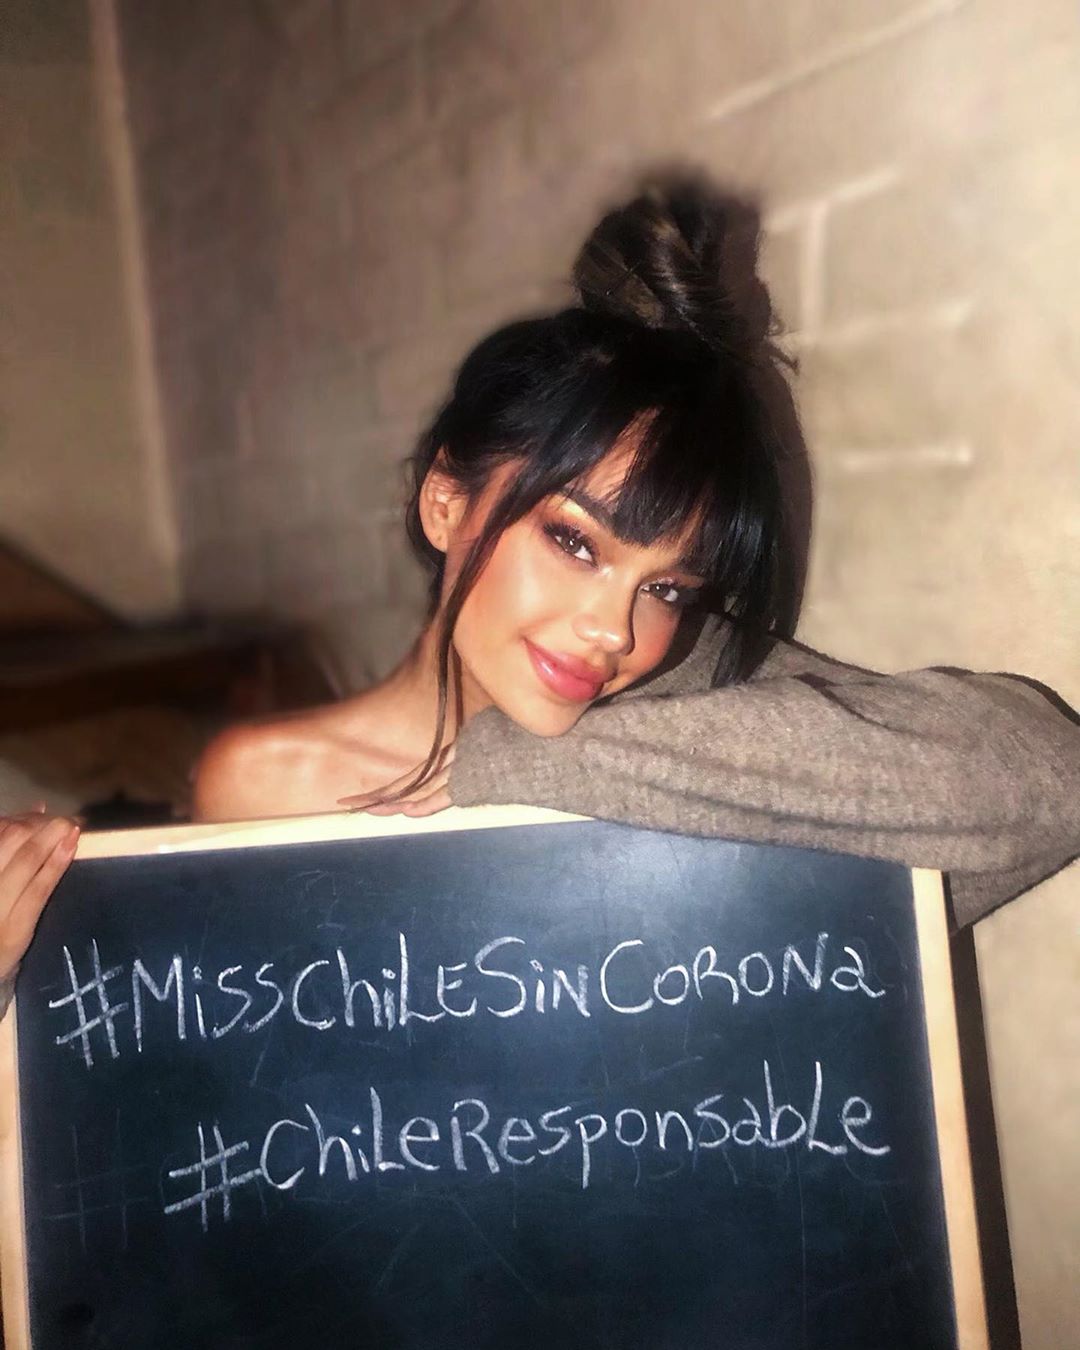 chile -  "Miss Chile sin Corona": Modelos se unen en campaña solidaria por Covid-19  IoraxF